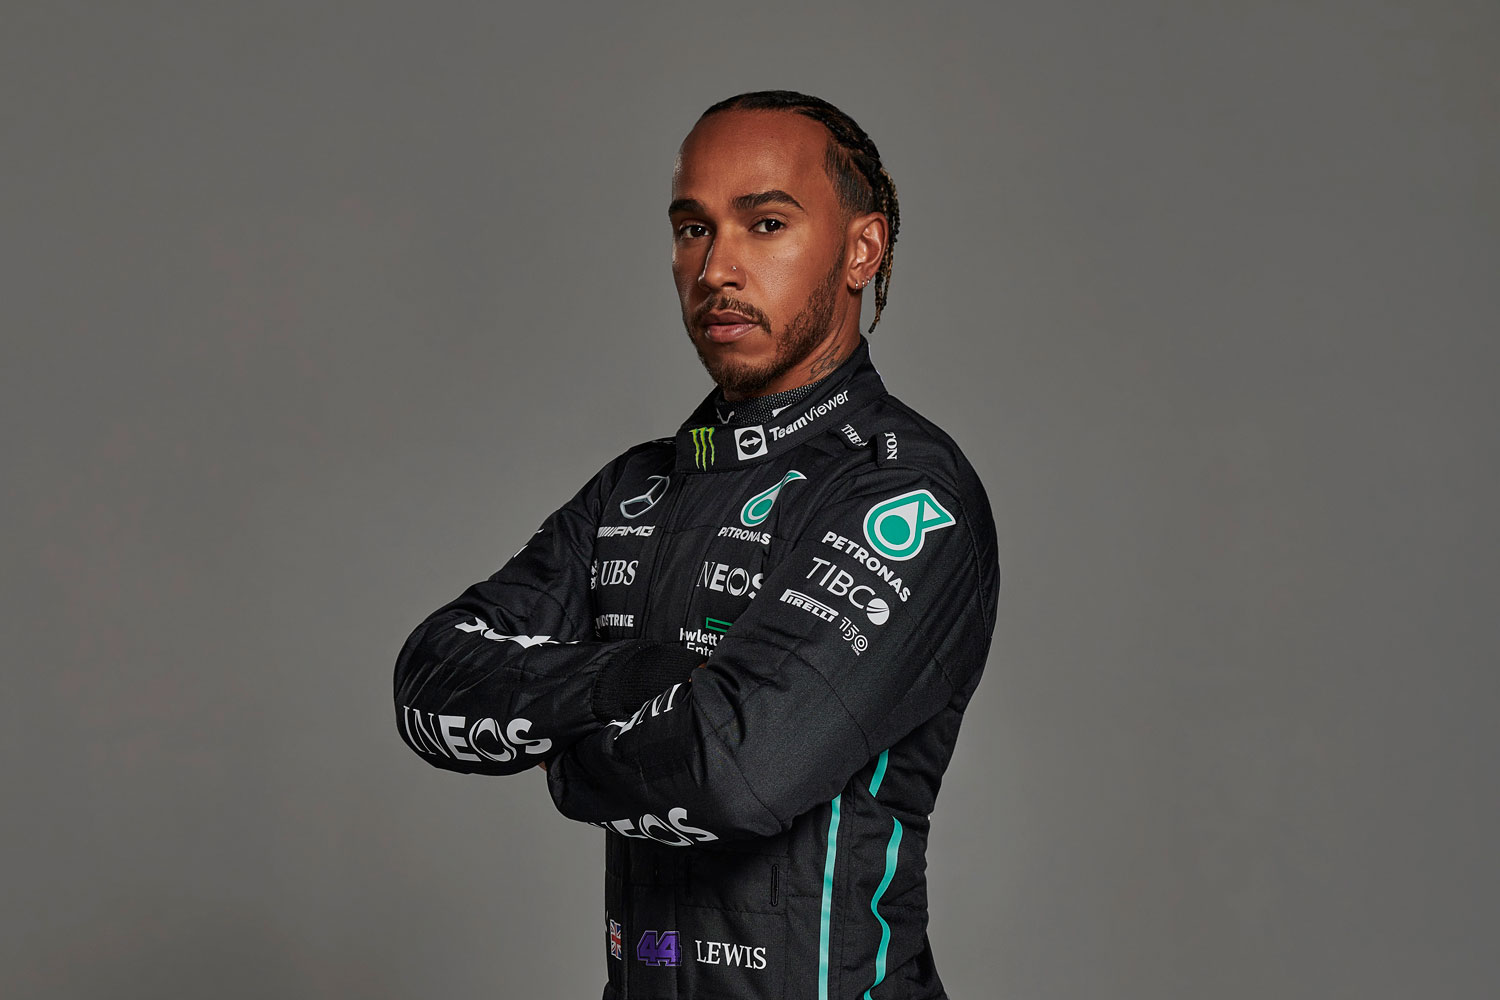 8. Lewis Hamilton